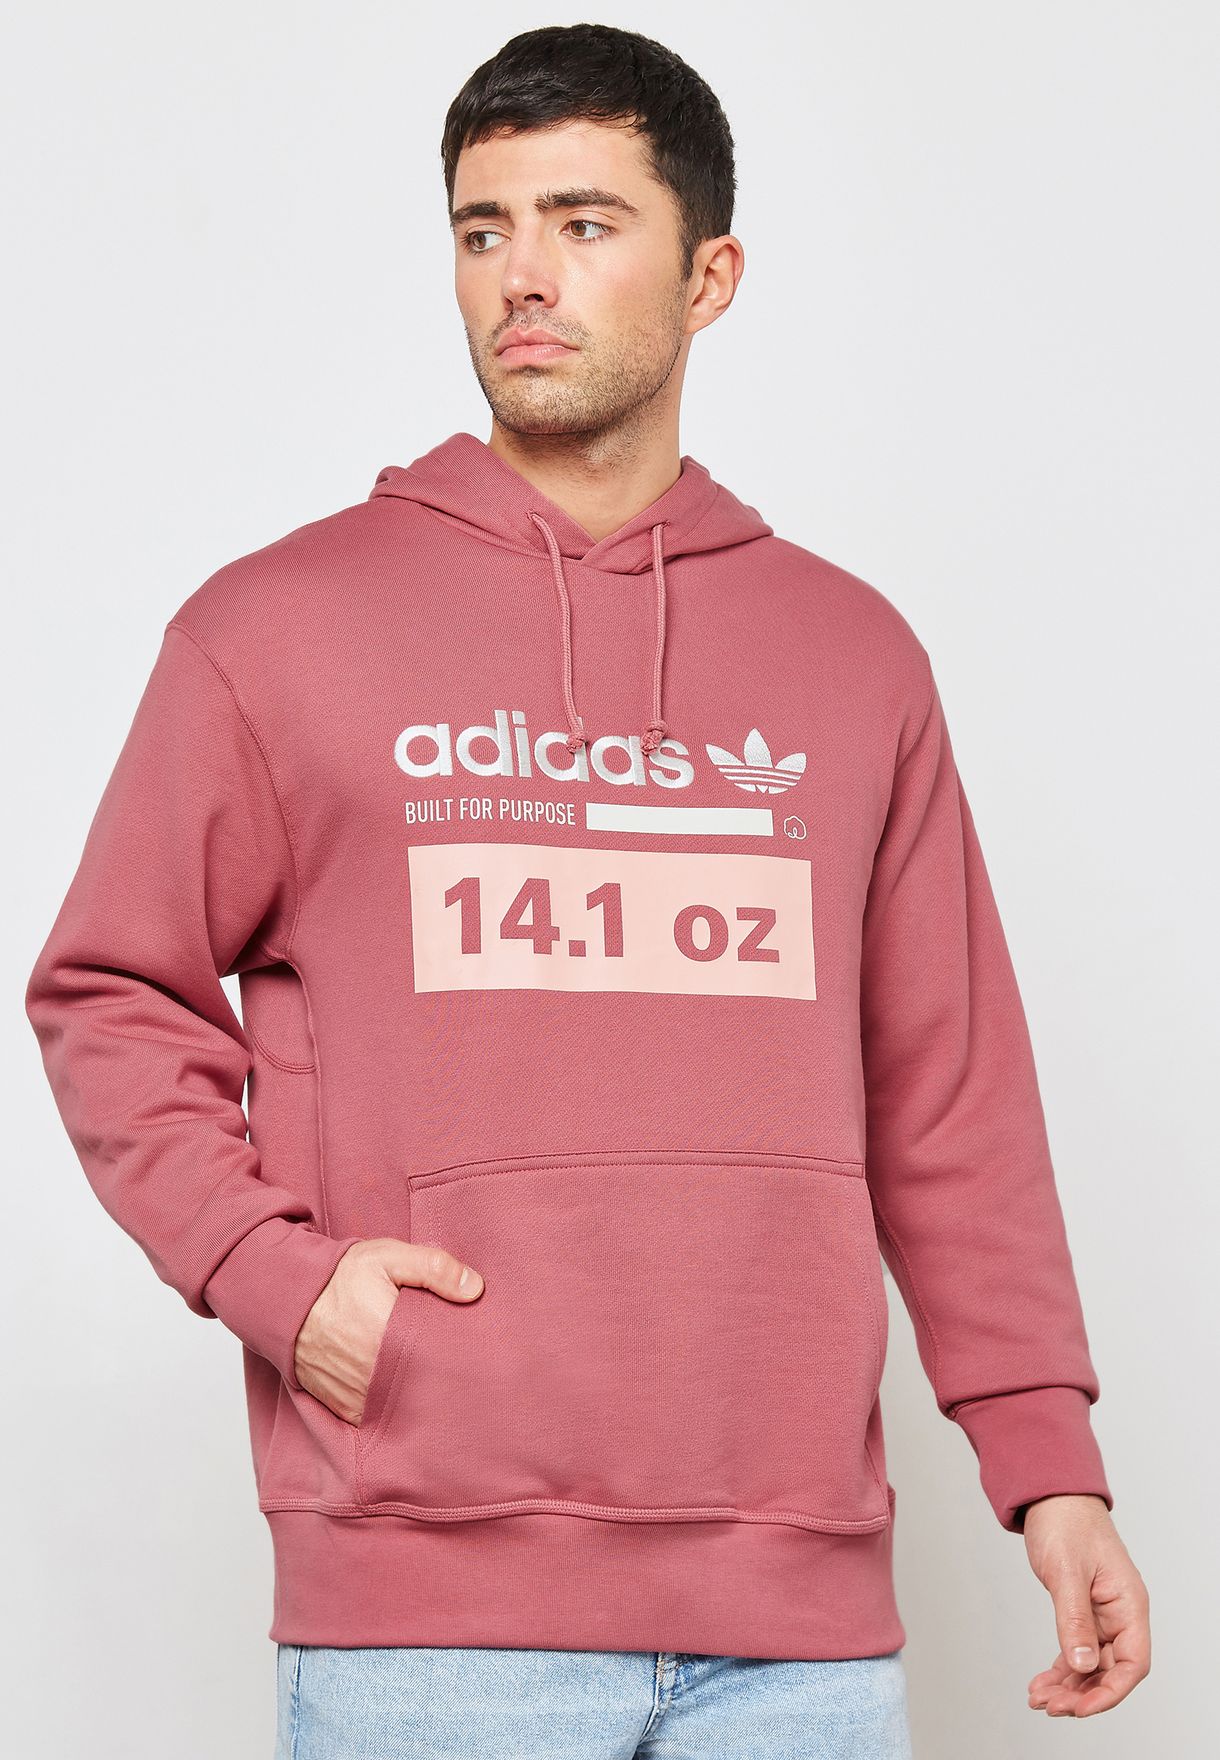 adidas hoodie mens pink